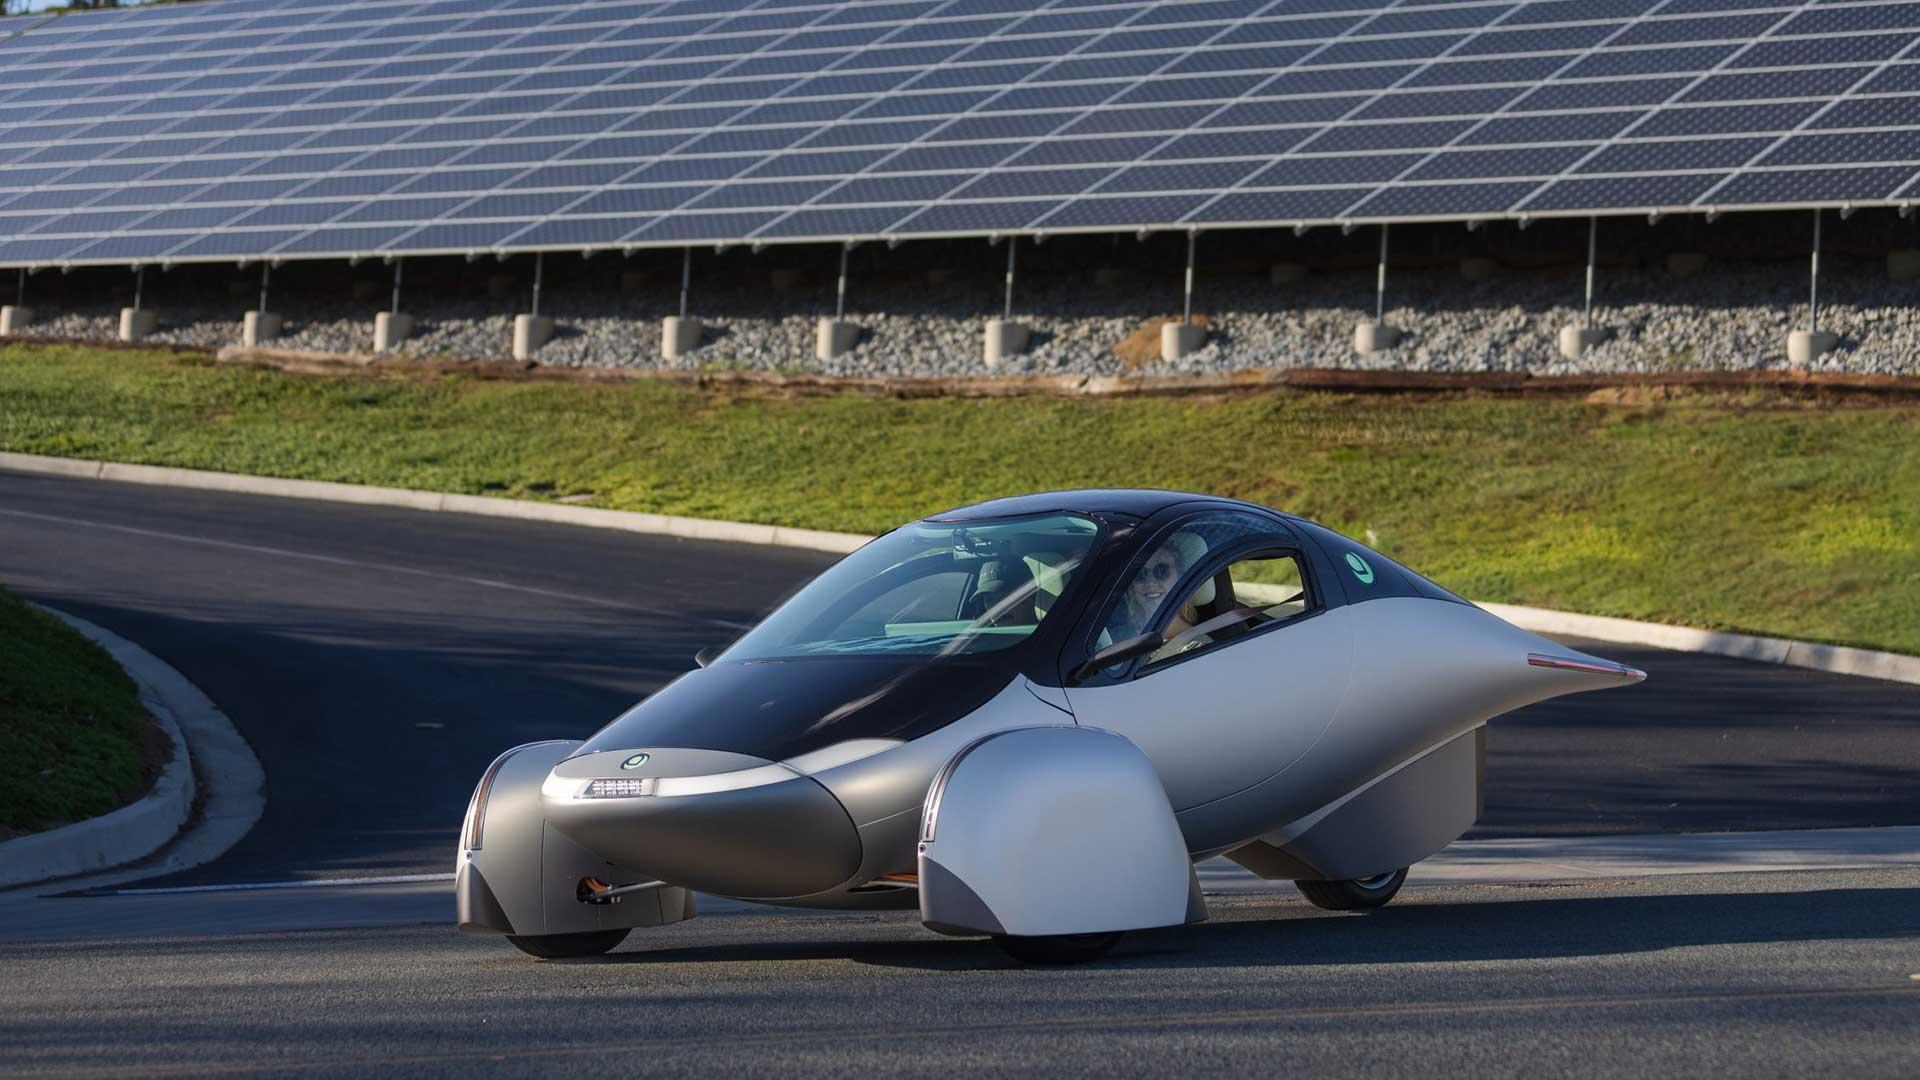 Aptera driewieler conceptversie rijdend op een weg schuin voor voor wat zonnepanelen